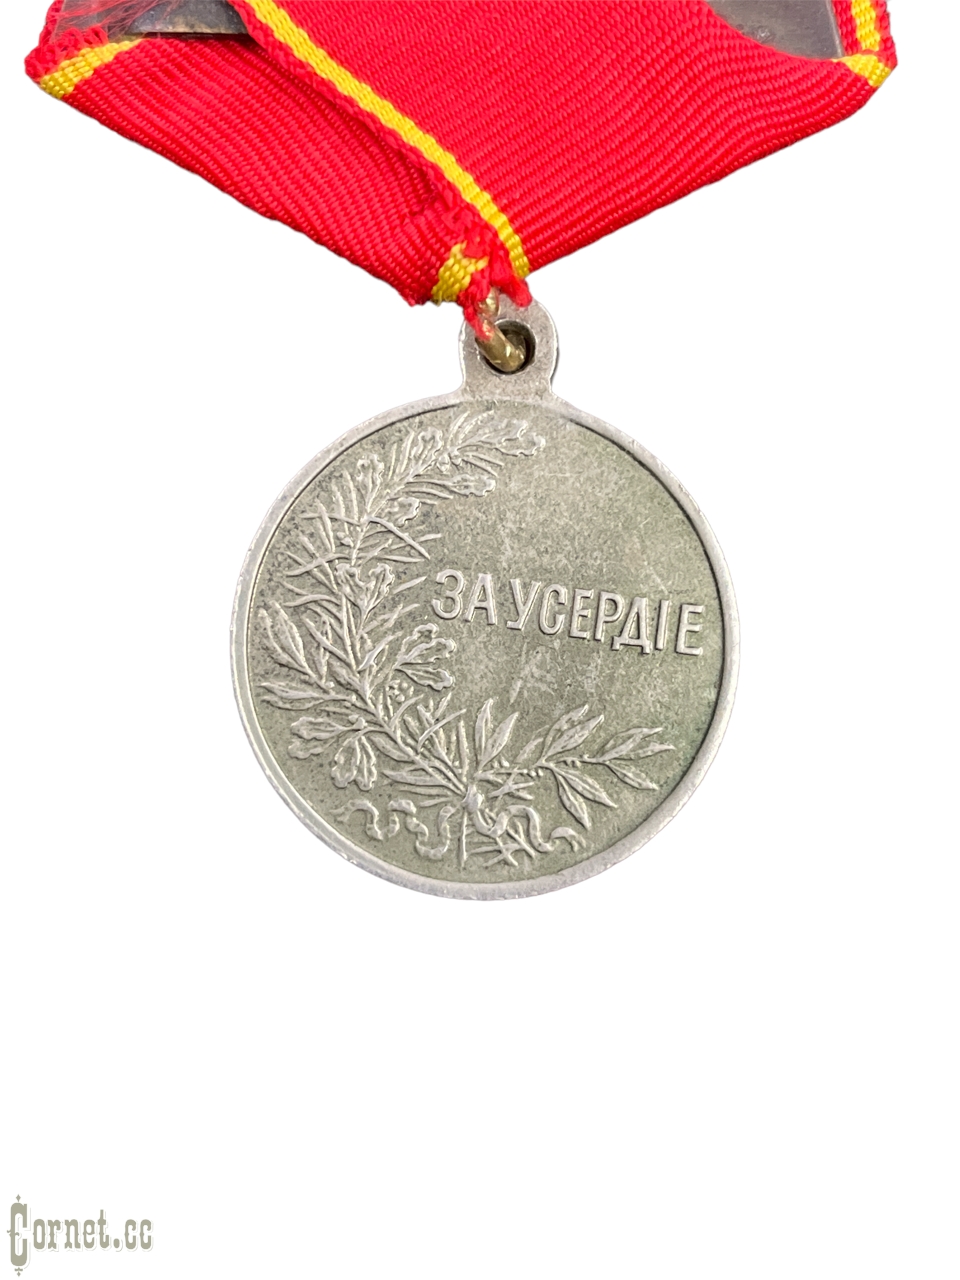 Medal "For Zeal"   Nicholas II